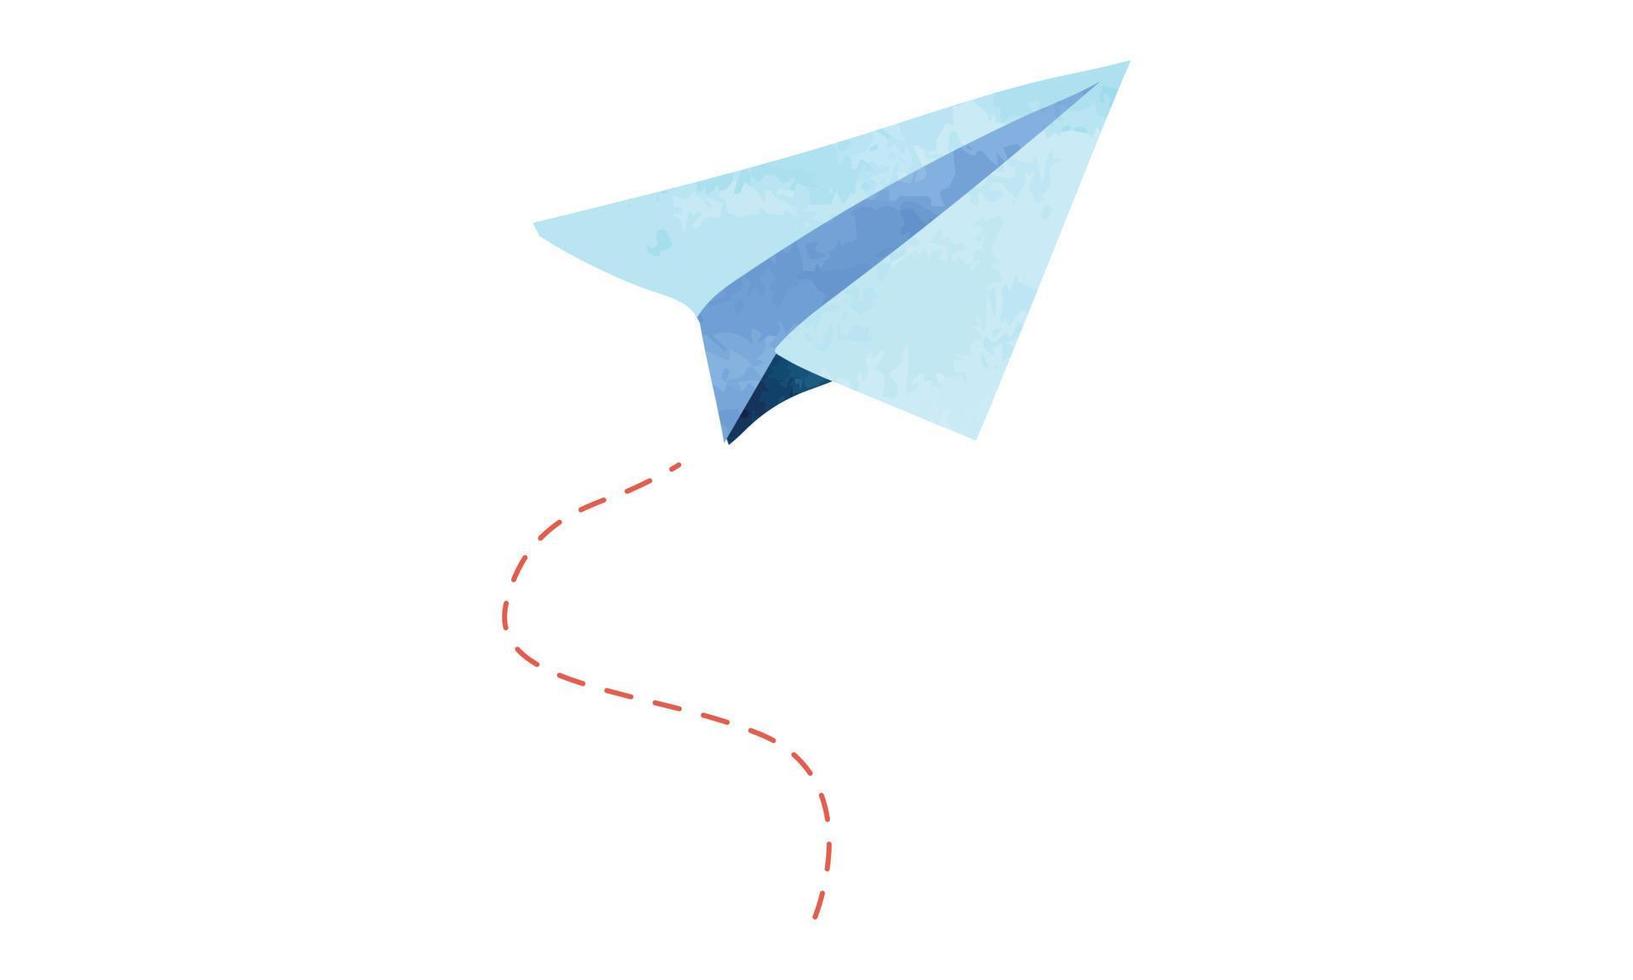 avion en papier bleu dessin aquarelle illustration vectorielle isolée sur fond blanc. clipart d'avion en papier plié à la main. illustration d'avion en papier dessin à la main aquarelle mignon, dessin artistique vecteur